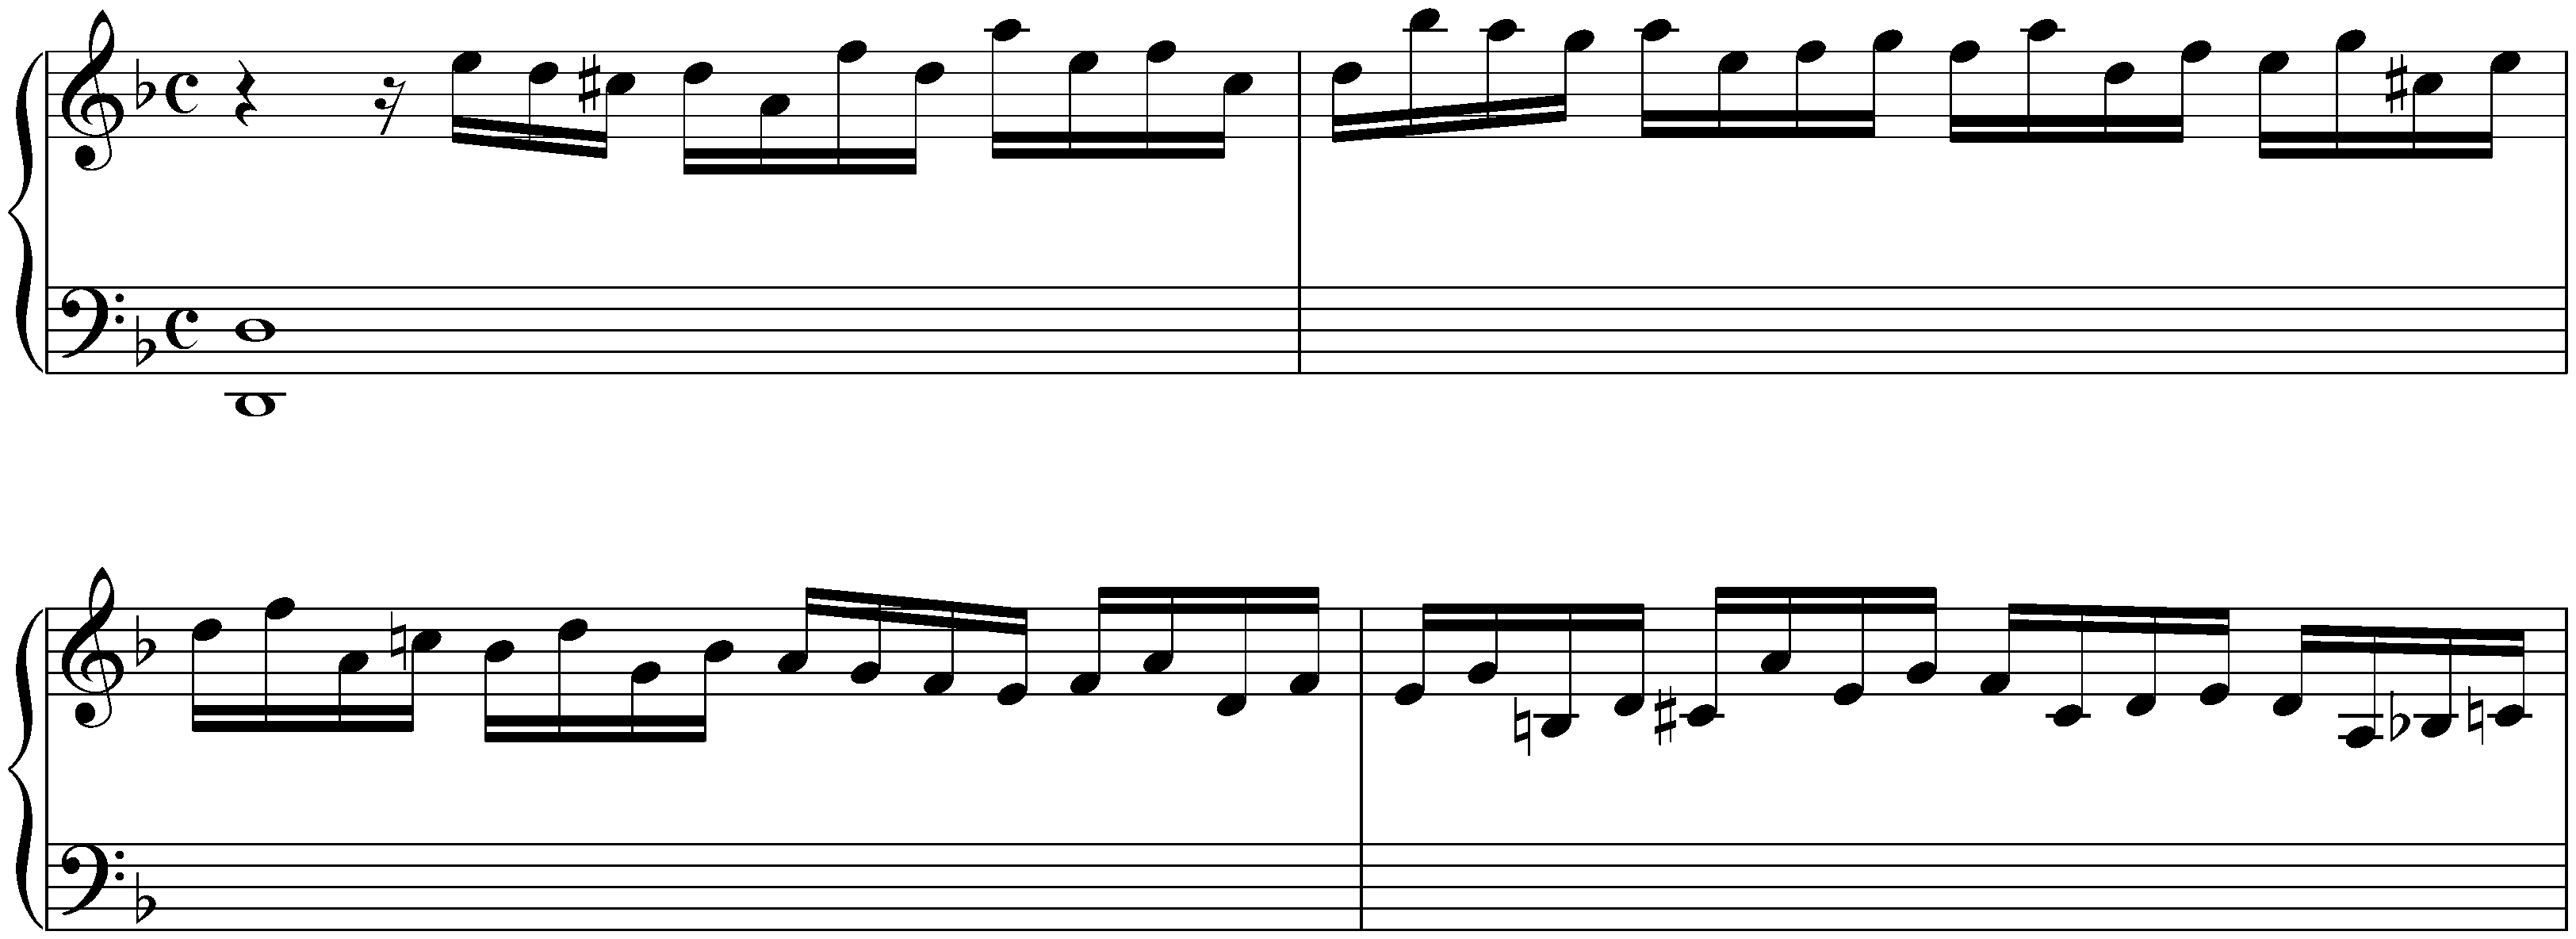 Prélude in D minor, HWV 561